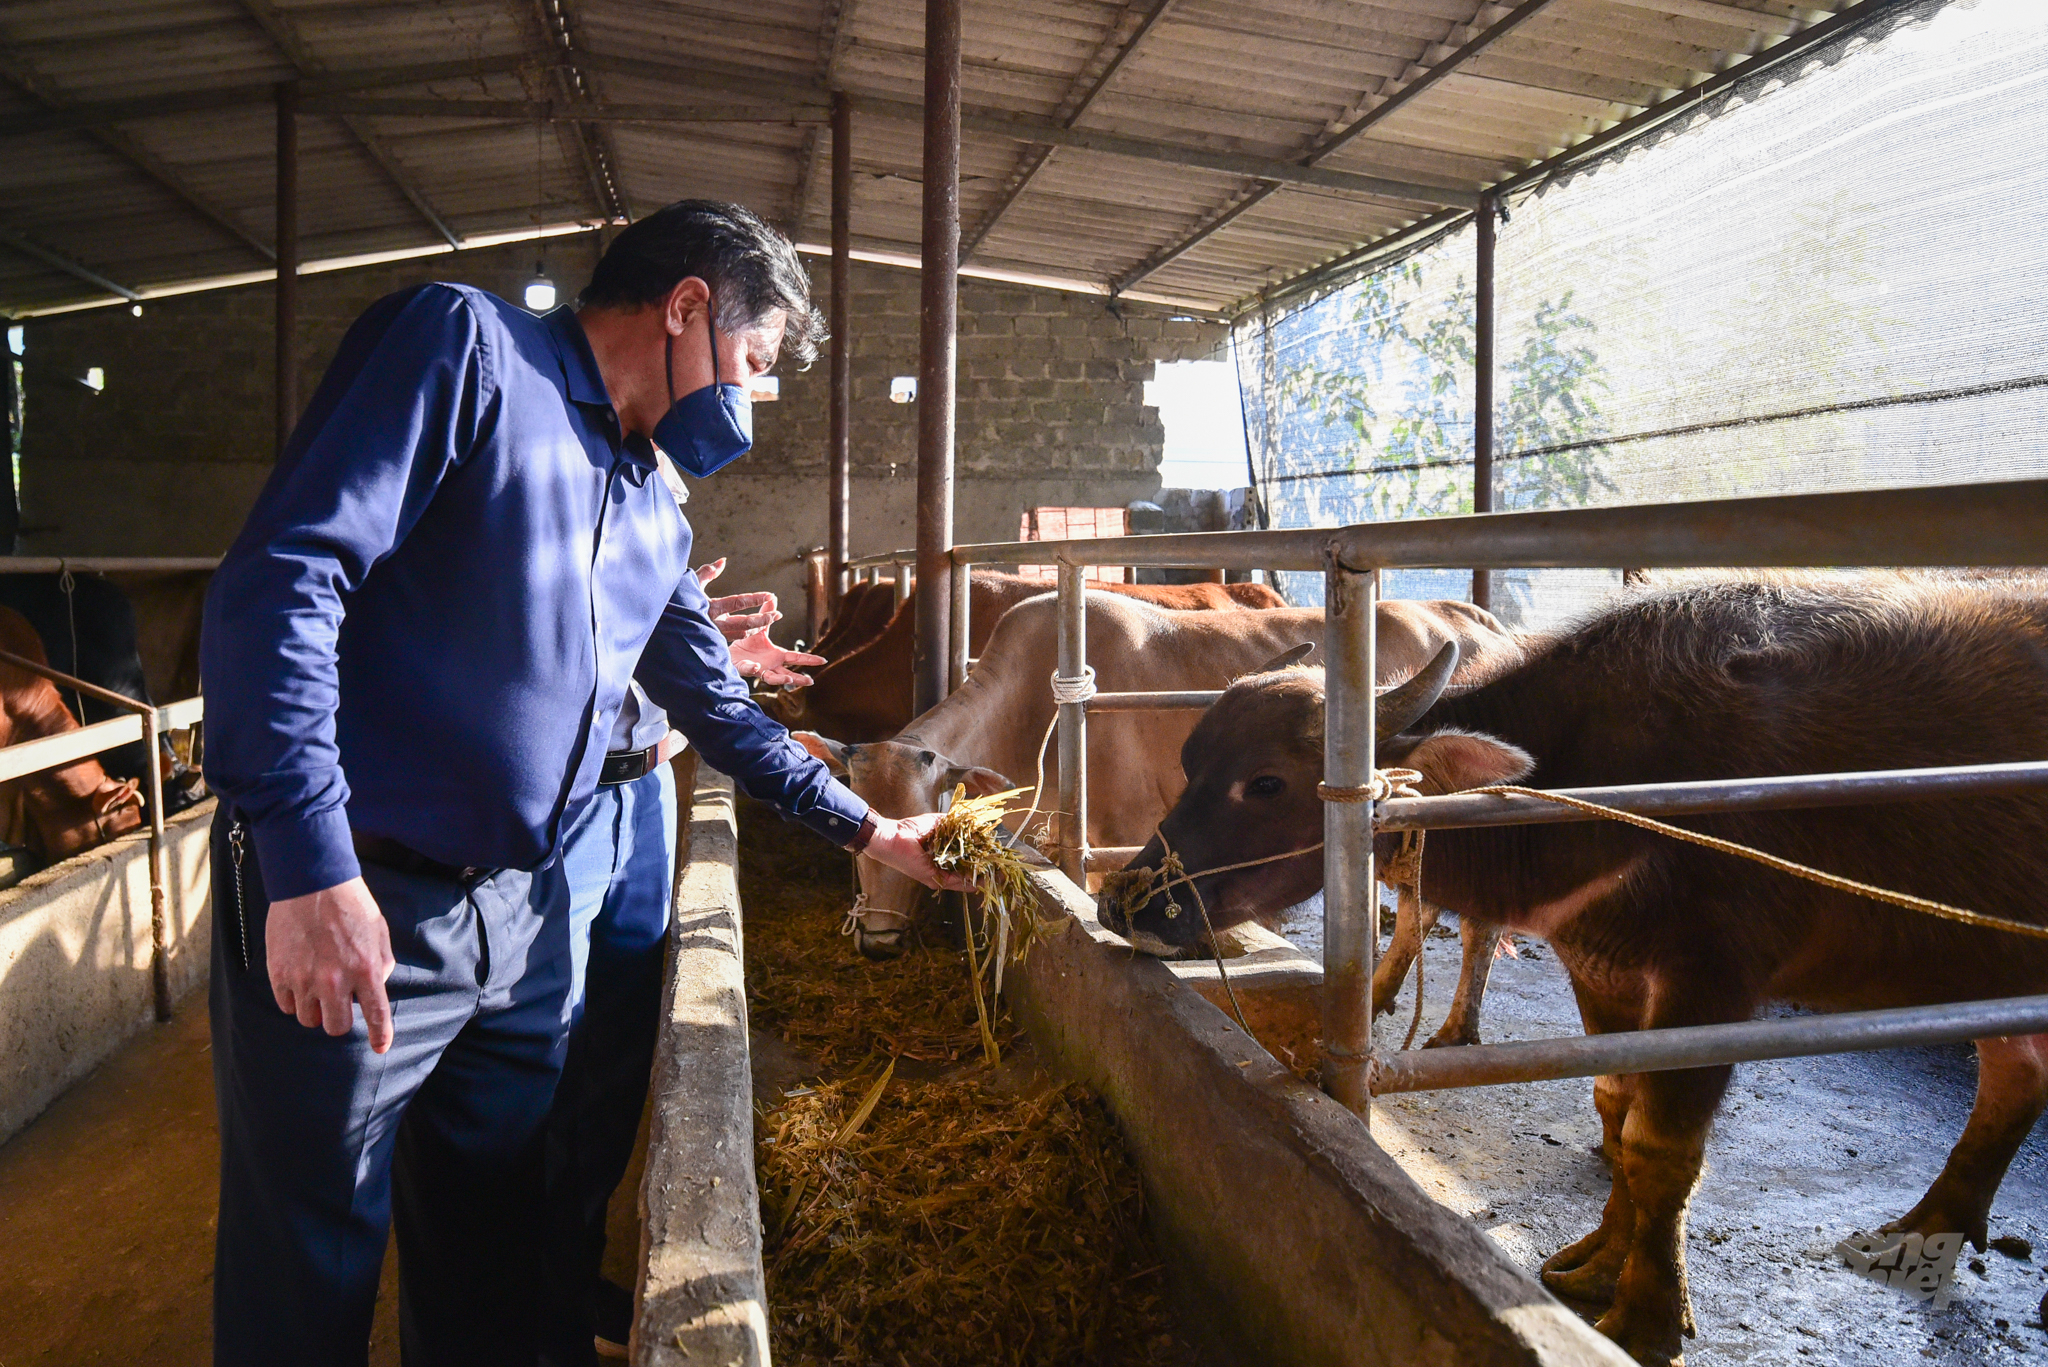 Mô hình trồng cỏ và ủ chua làm thức ăn qua mùa đông cho gia súc tại Hà Giang được Giám đốc TTKNQG Lê Quốc Thanh đánh giá cao. Ảnh: Tùng Đinh.